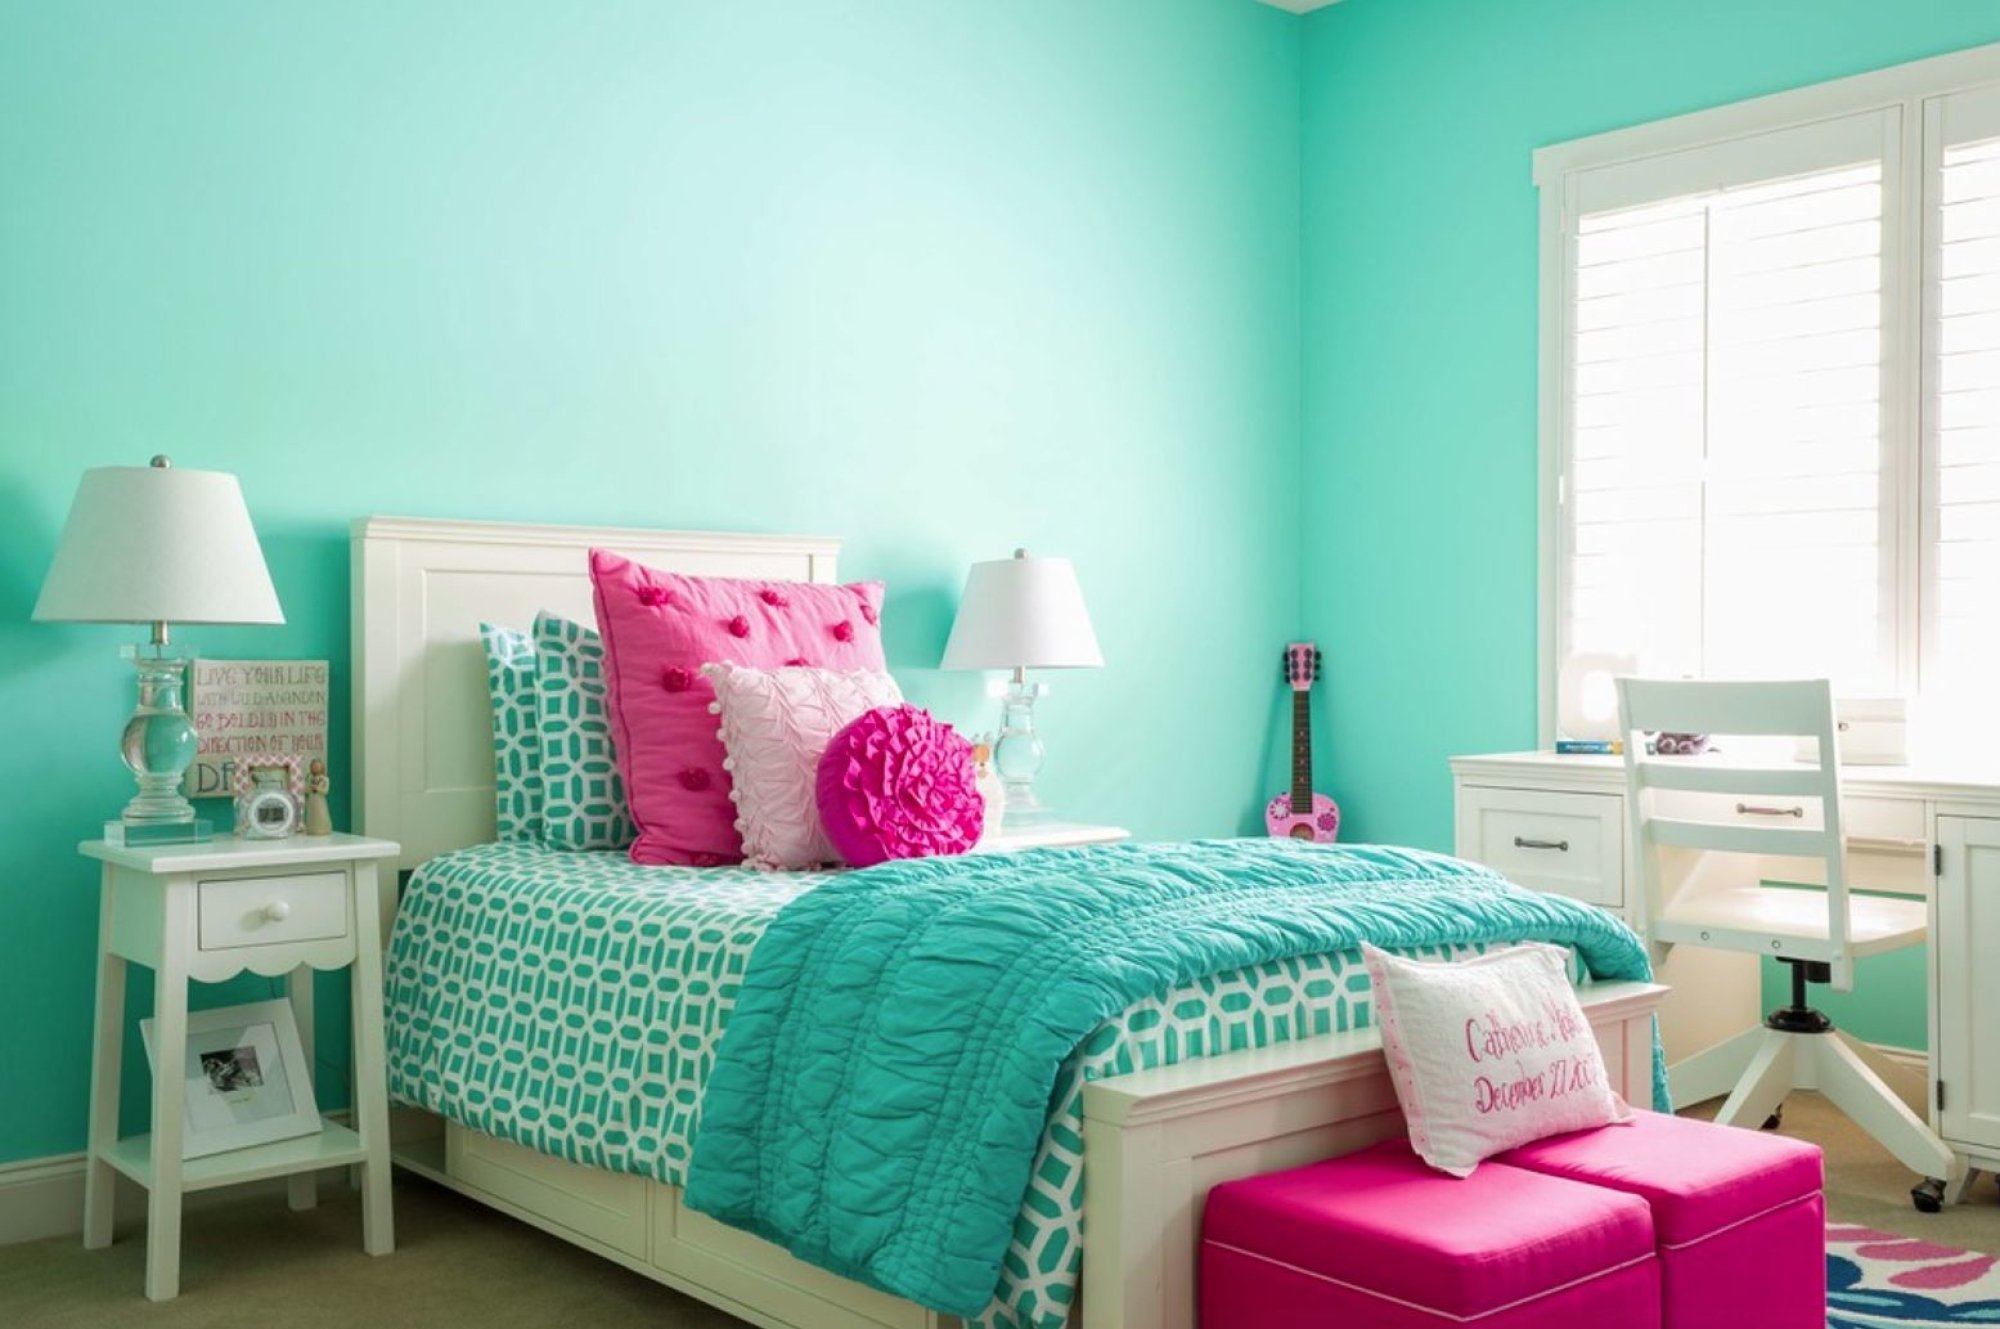 แนวคิดห้องนอนสีชมพูสีฟ้า